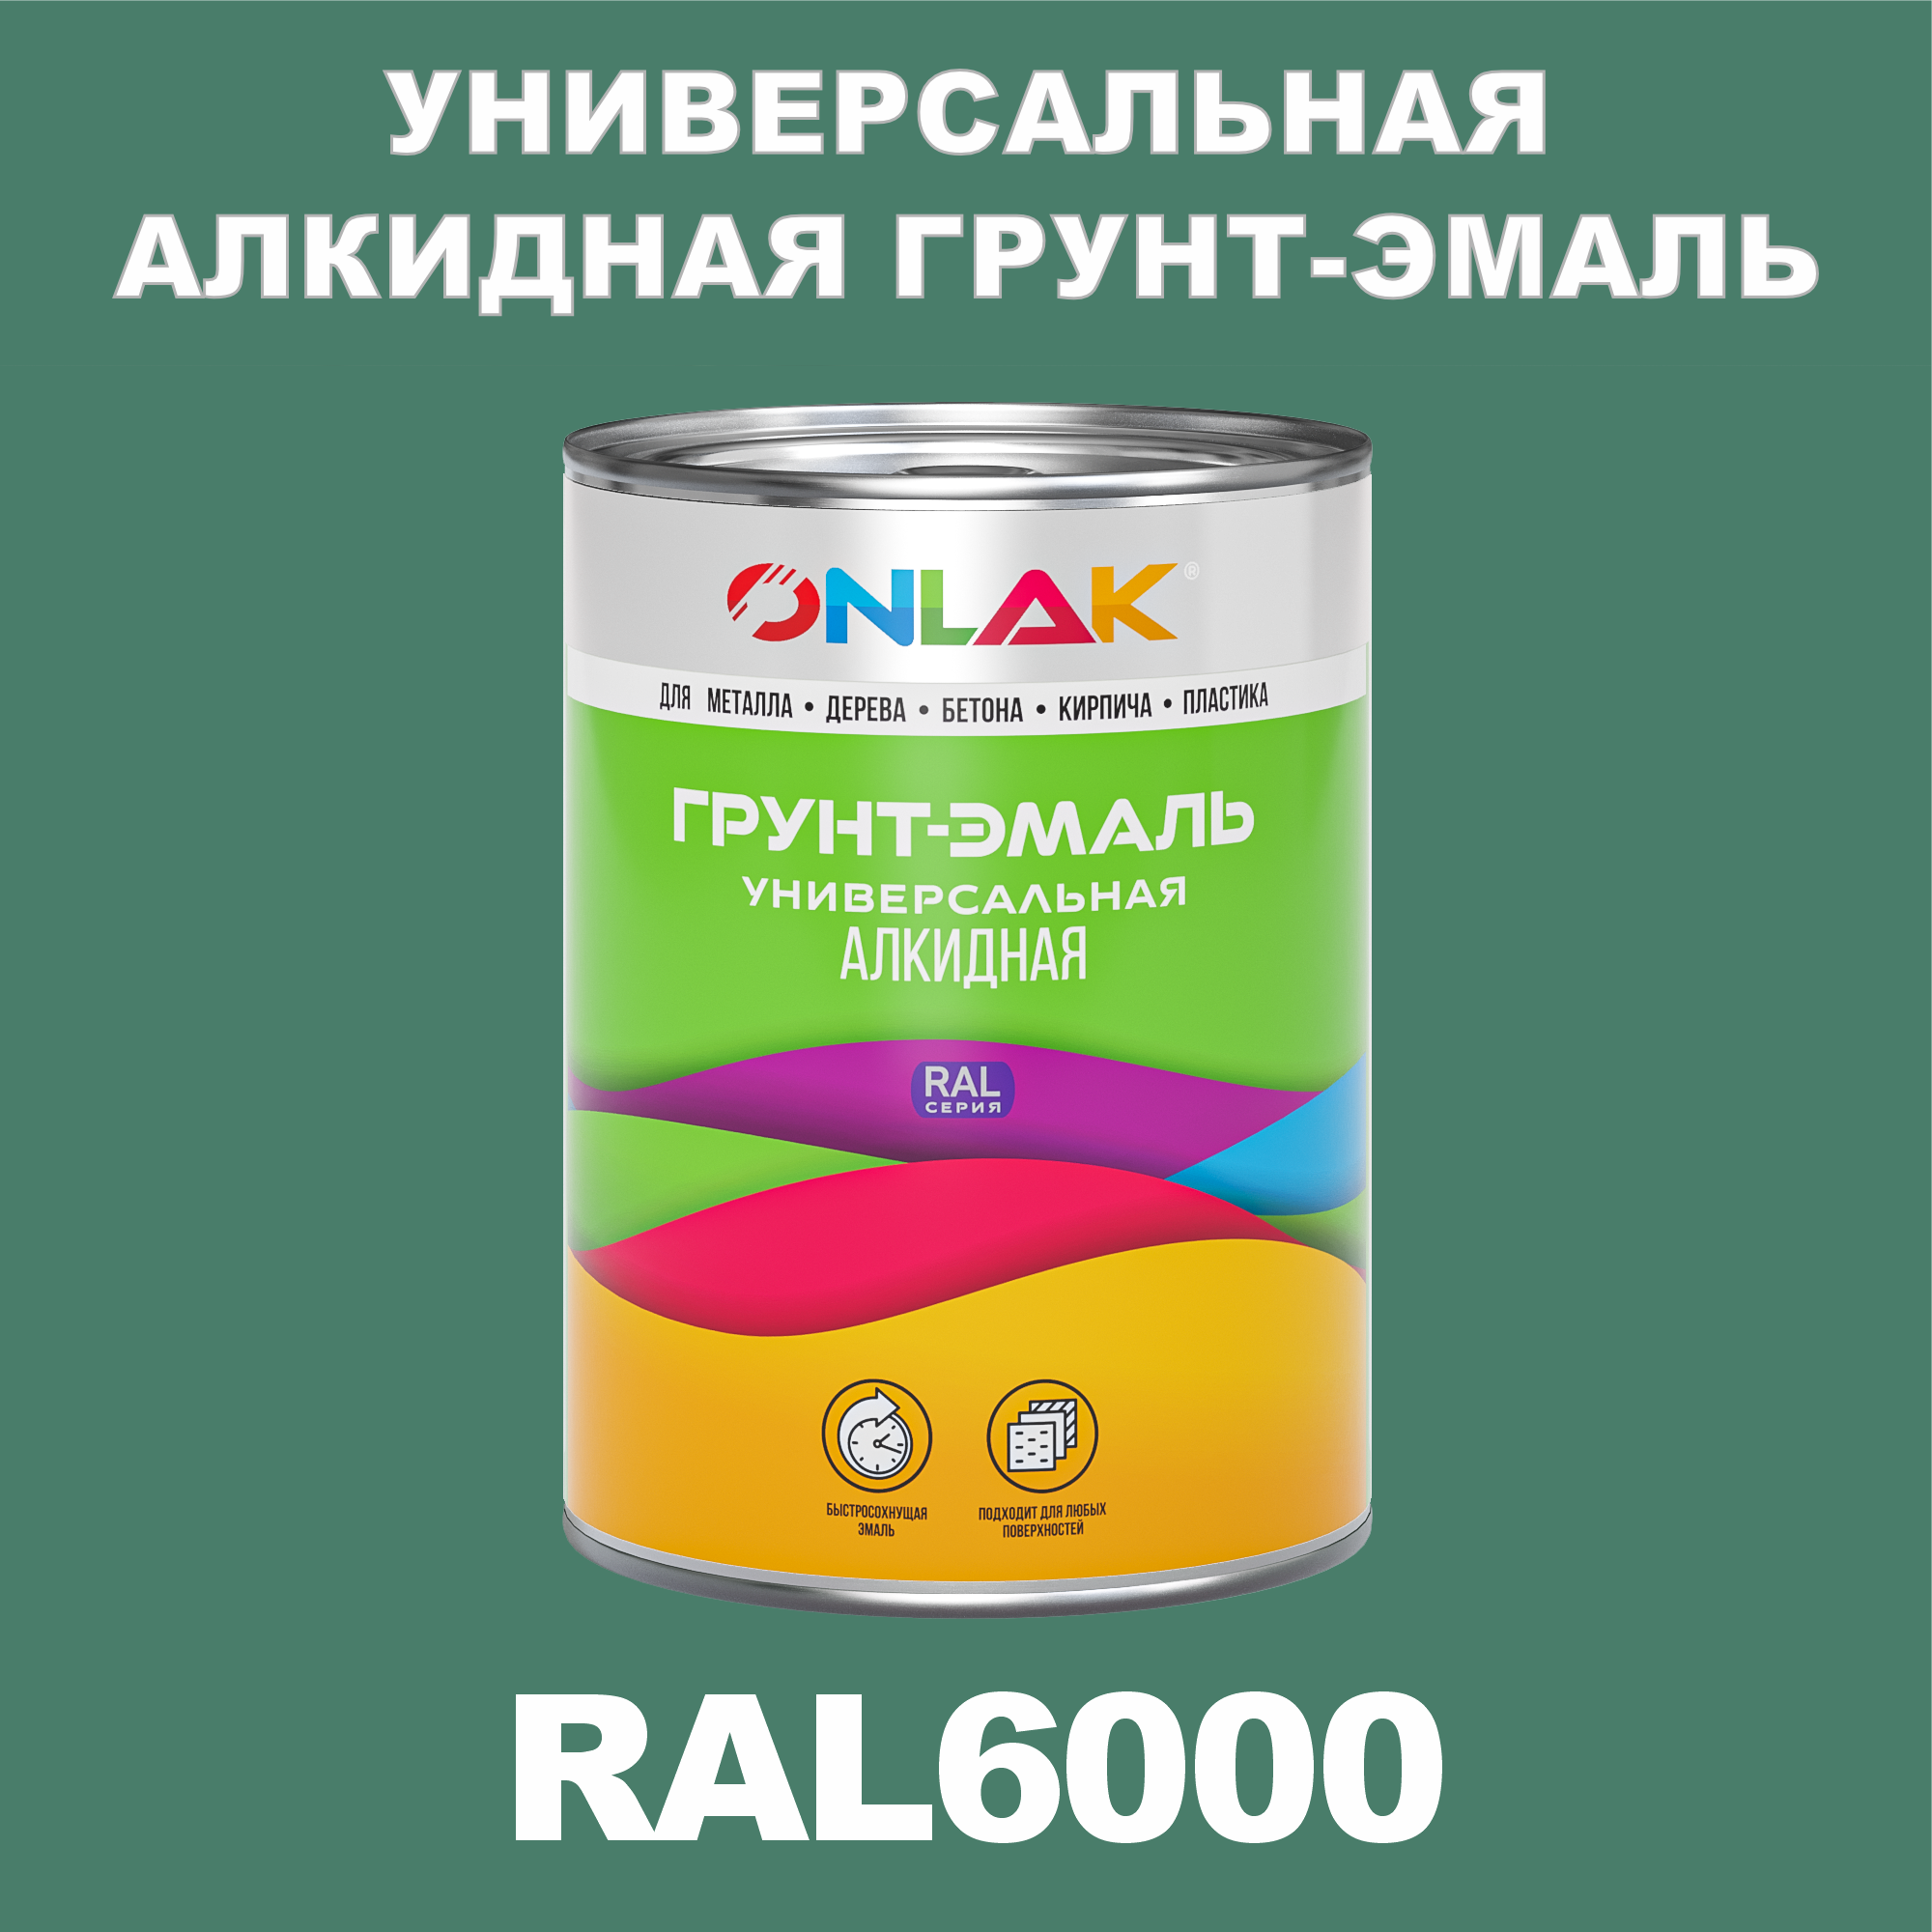 Грунт-эмаль ONLAK 1К RAL6000 антикоррозионная алкидная по металлу по ржавчине 1 кг грунт эмаль yollo по ржавчине алкидная серая 0 9 кг